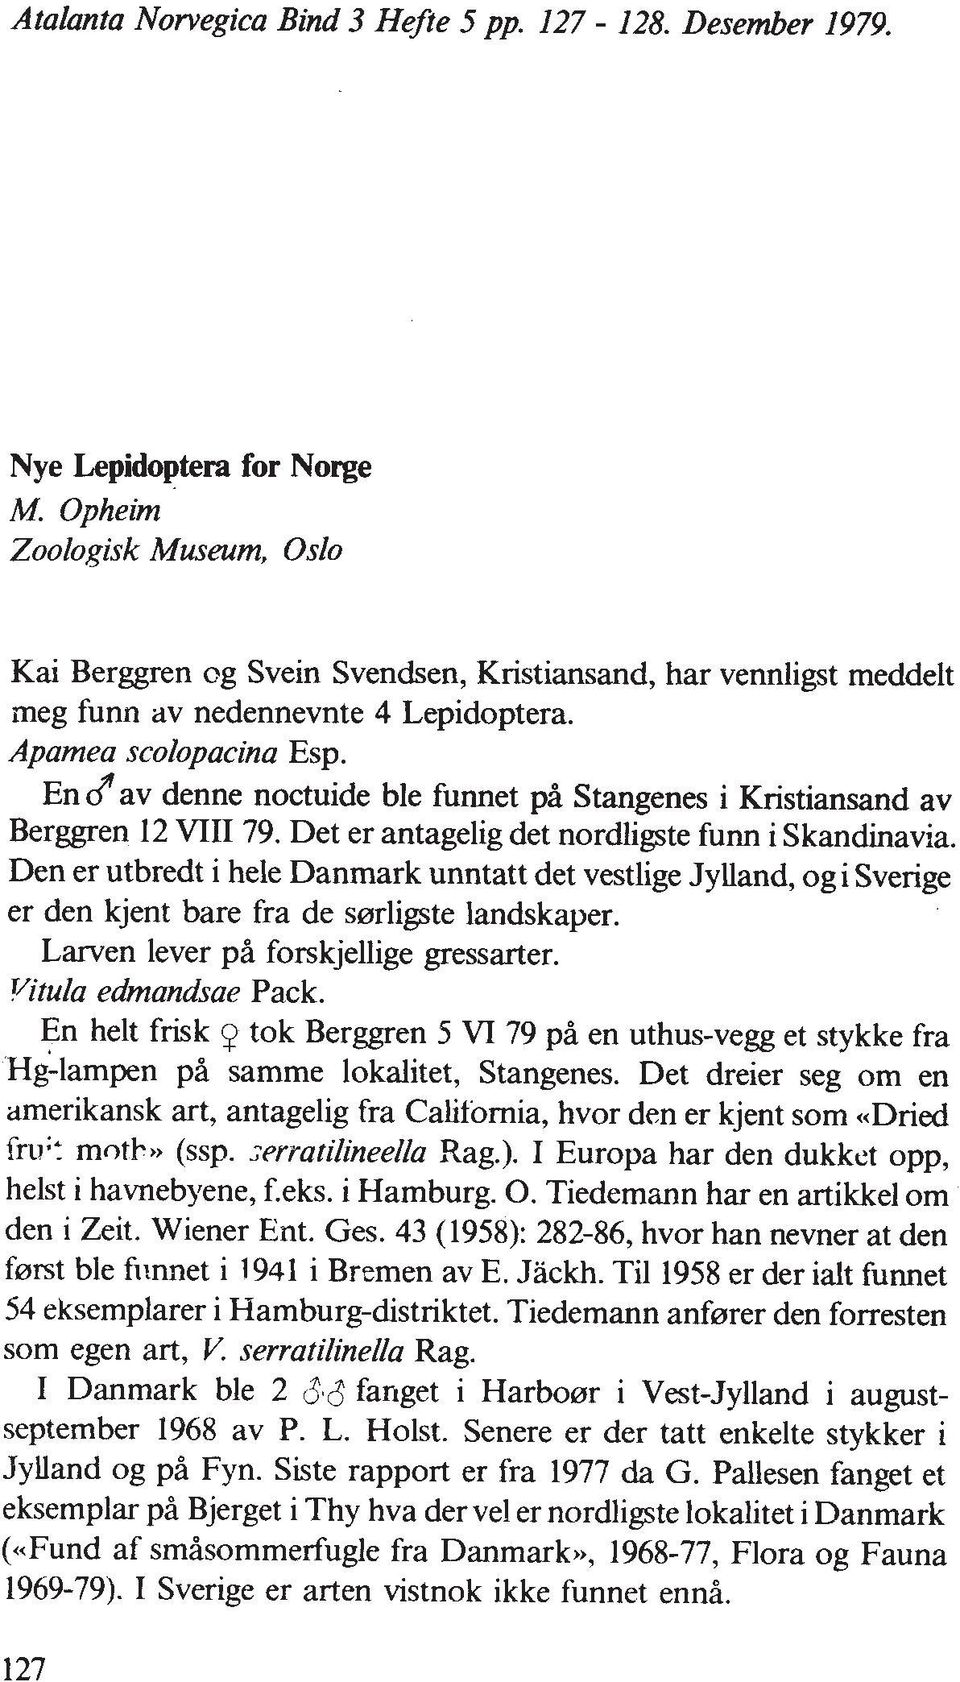 av denne noctuide ble fumet pa Stangenes i Kristiansand av Berggren 12 VIII 79. Det er antagelig det nordligte fum i Skandinavia.